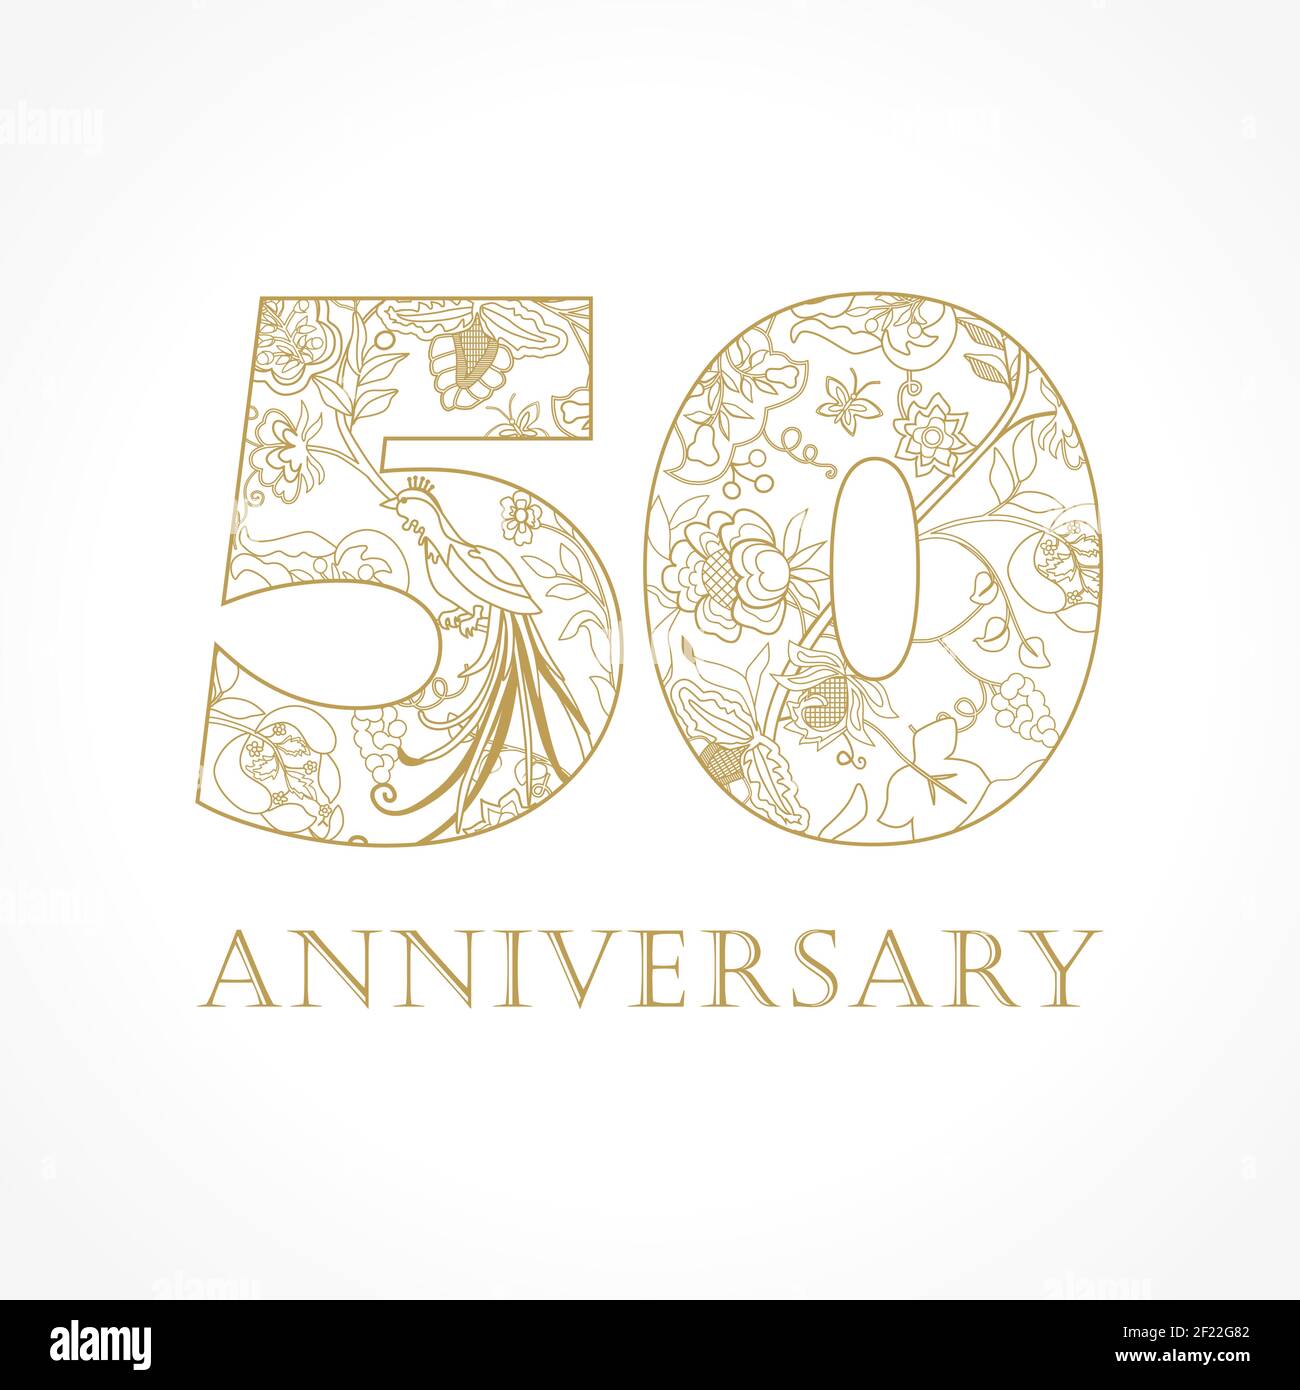 Kreatives Logo Konzept des 50th-jährigen Jubiläums in ethnischen Mustern und Paradiesvögeln. Isolierte abstrakte Grafik-Design-Vorlage. Top-50-Schild. Stock Vektor